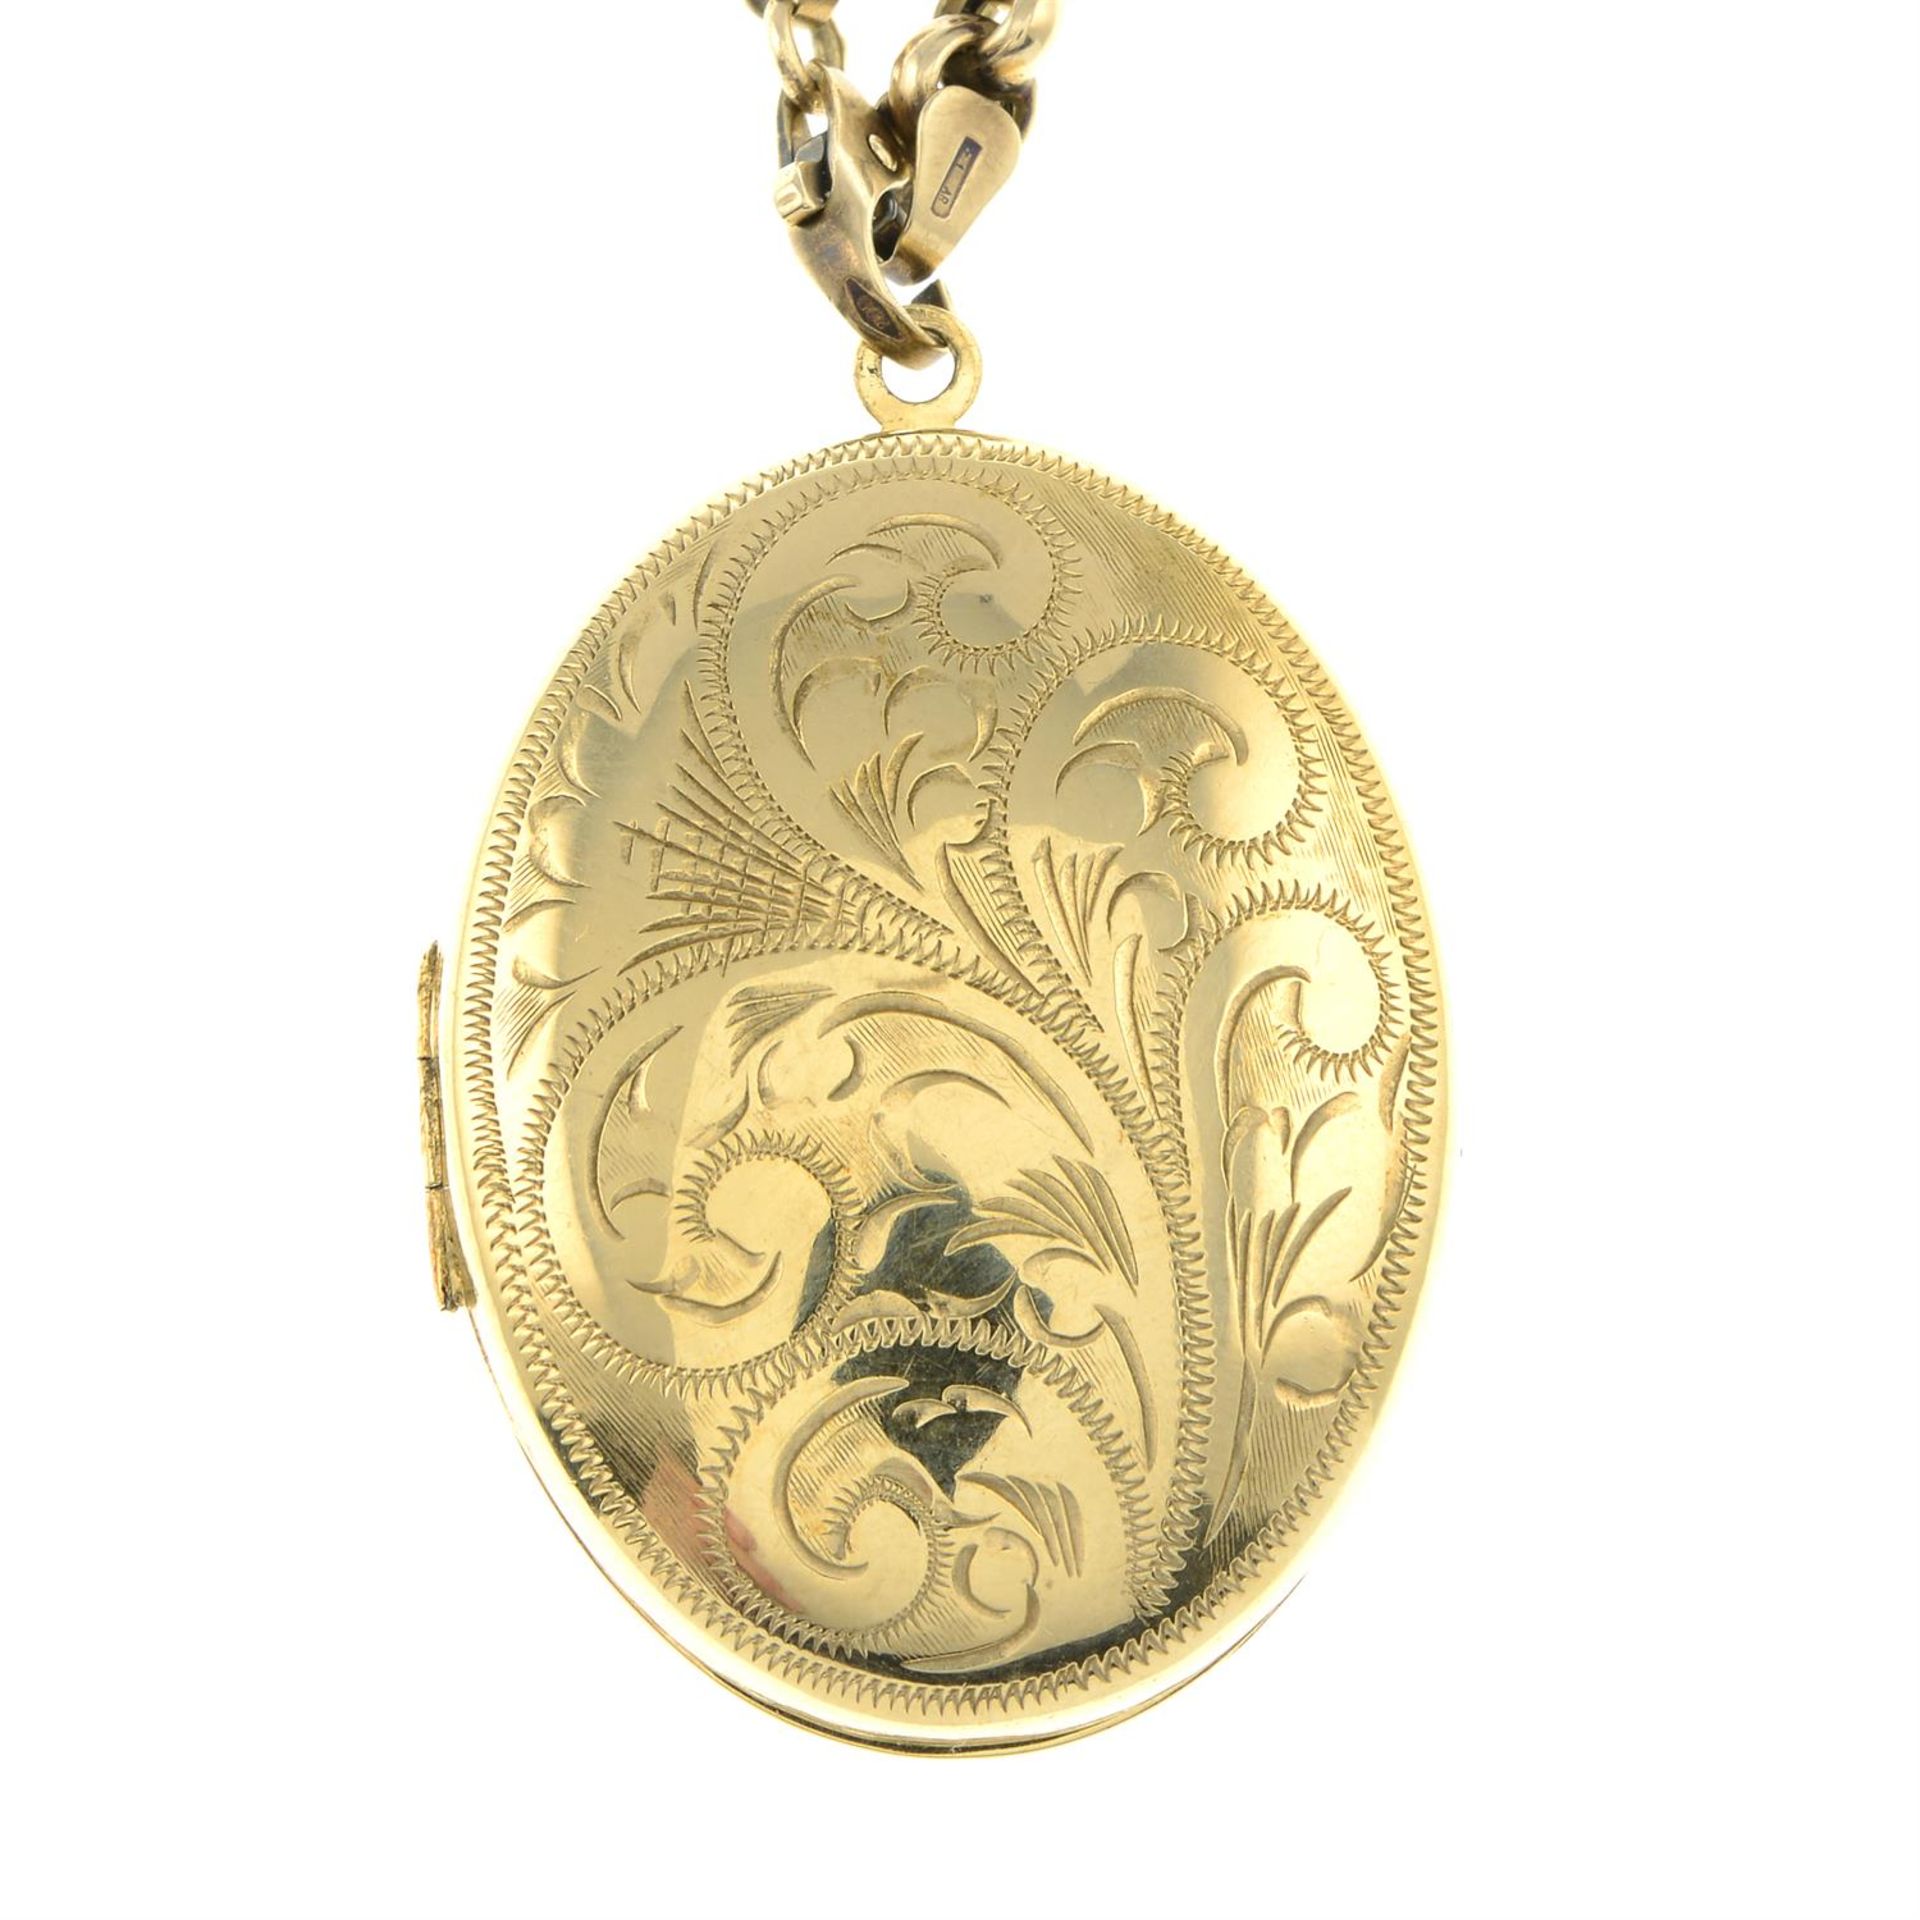 A foliate oval-shape locket pendant, with belcher-link chain.